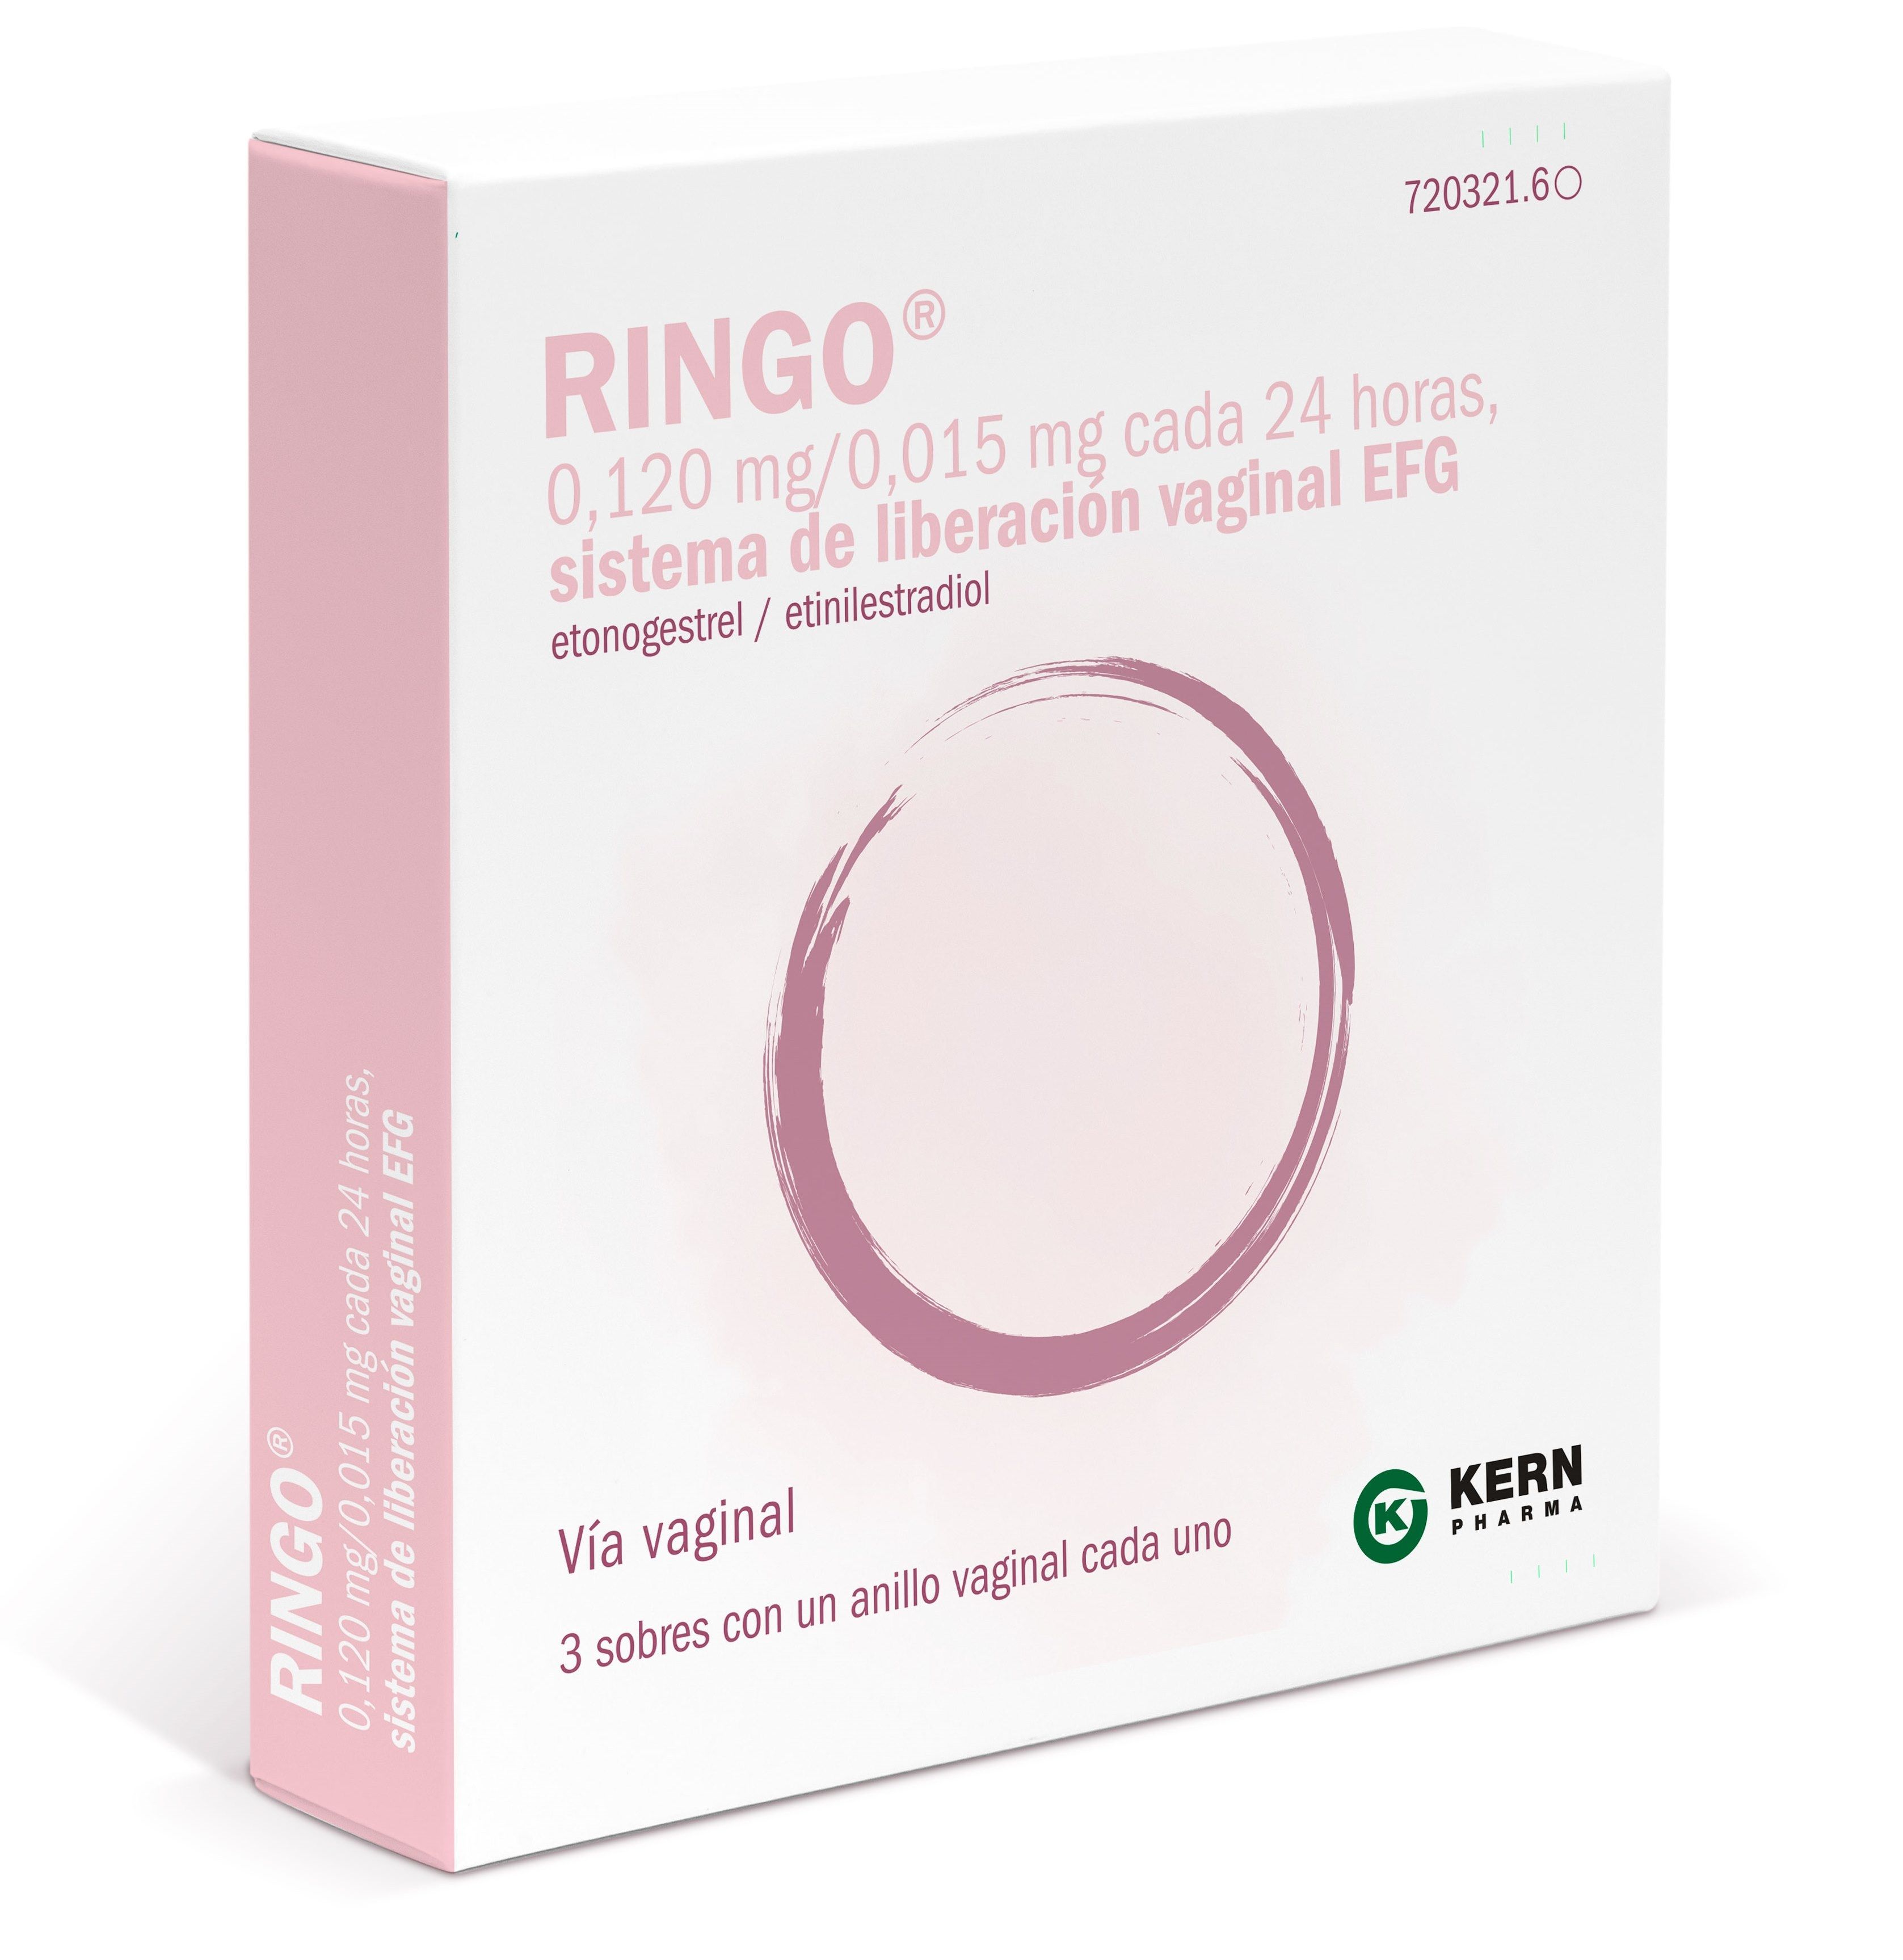 Portal temporal civilización Ringo® de Gynea, ahora disponible en caja con 3 anillos vaginales